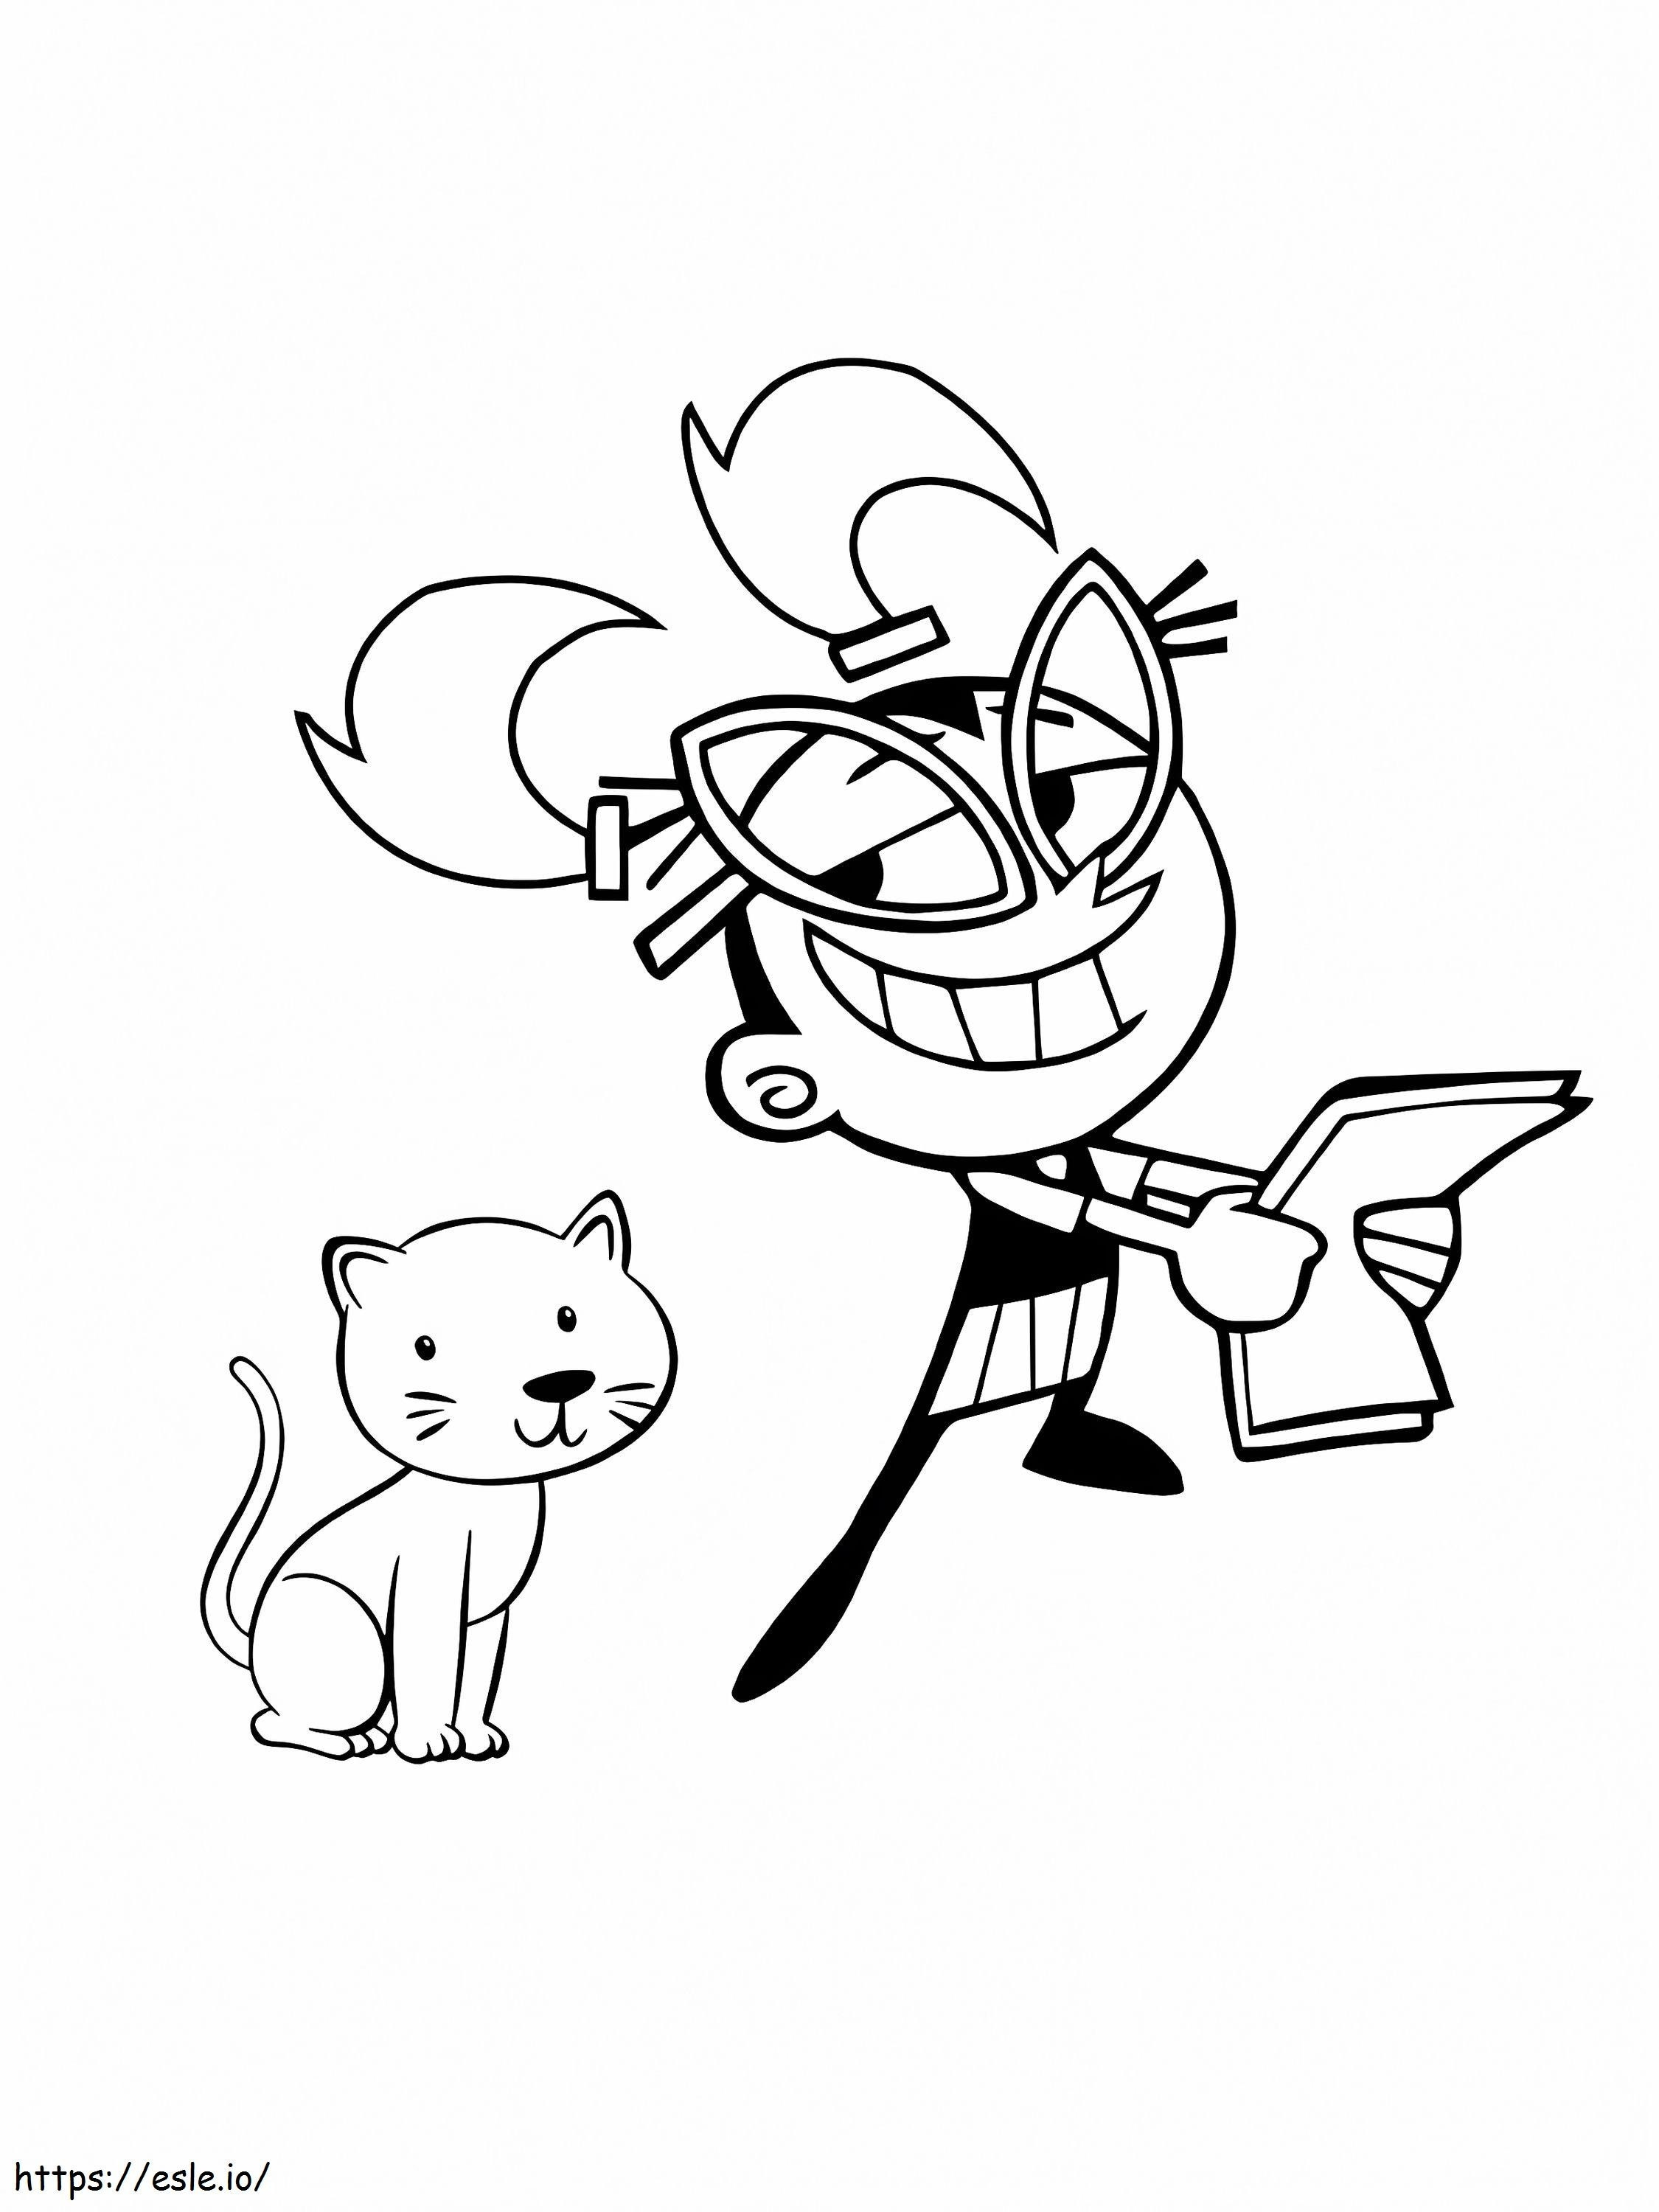 Tootie y el gato de los padrinos mágicos para colorear